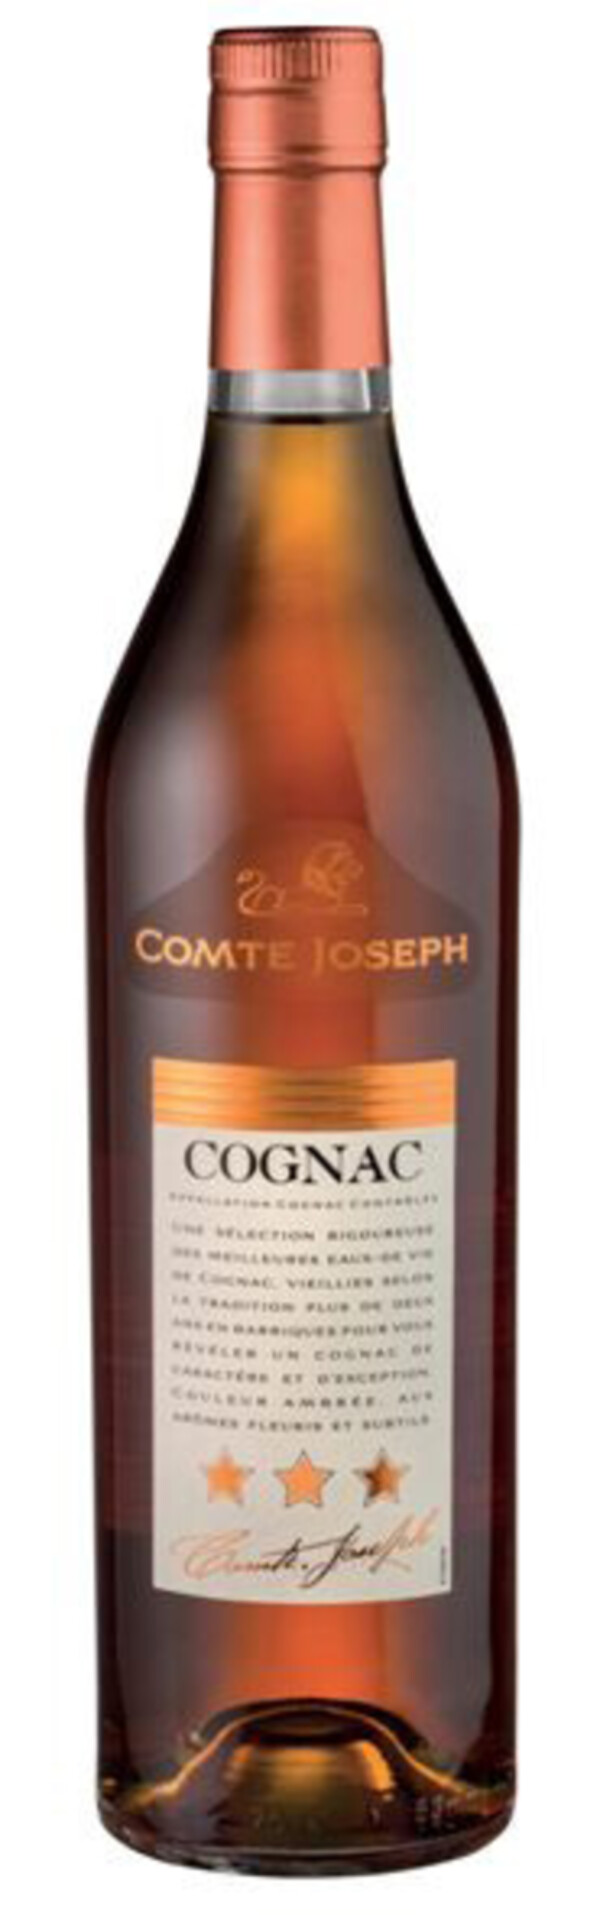 Bild 1 von Comte Joseph Cognac 0,7 ltr 0,7 ltr